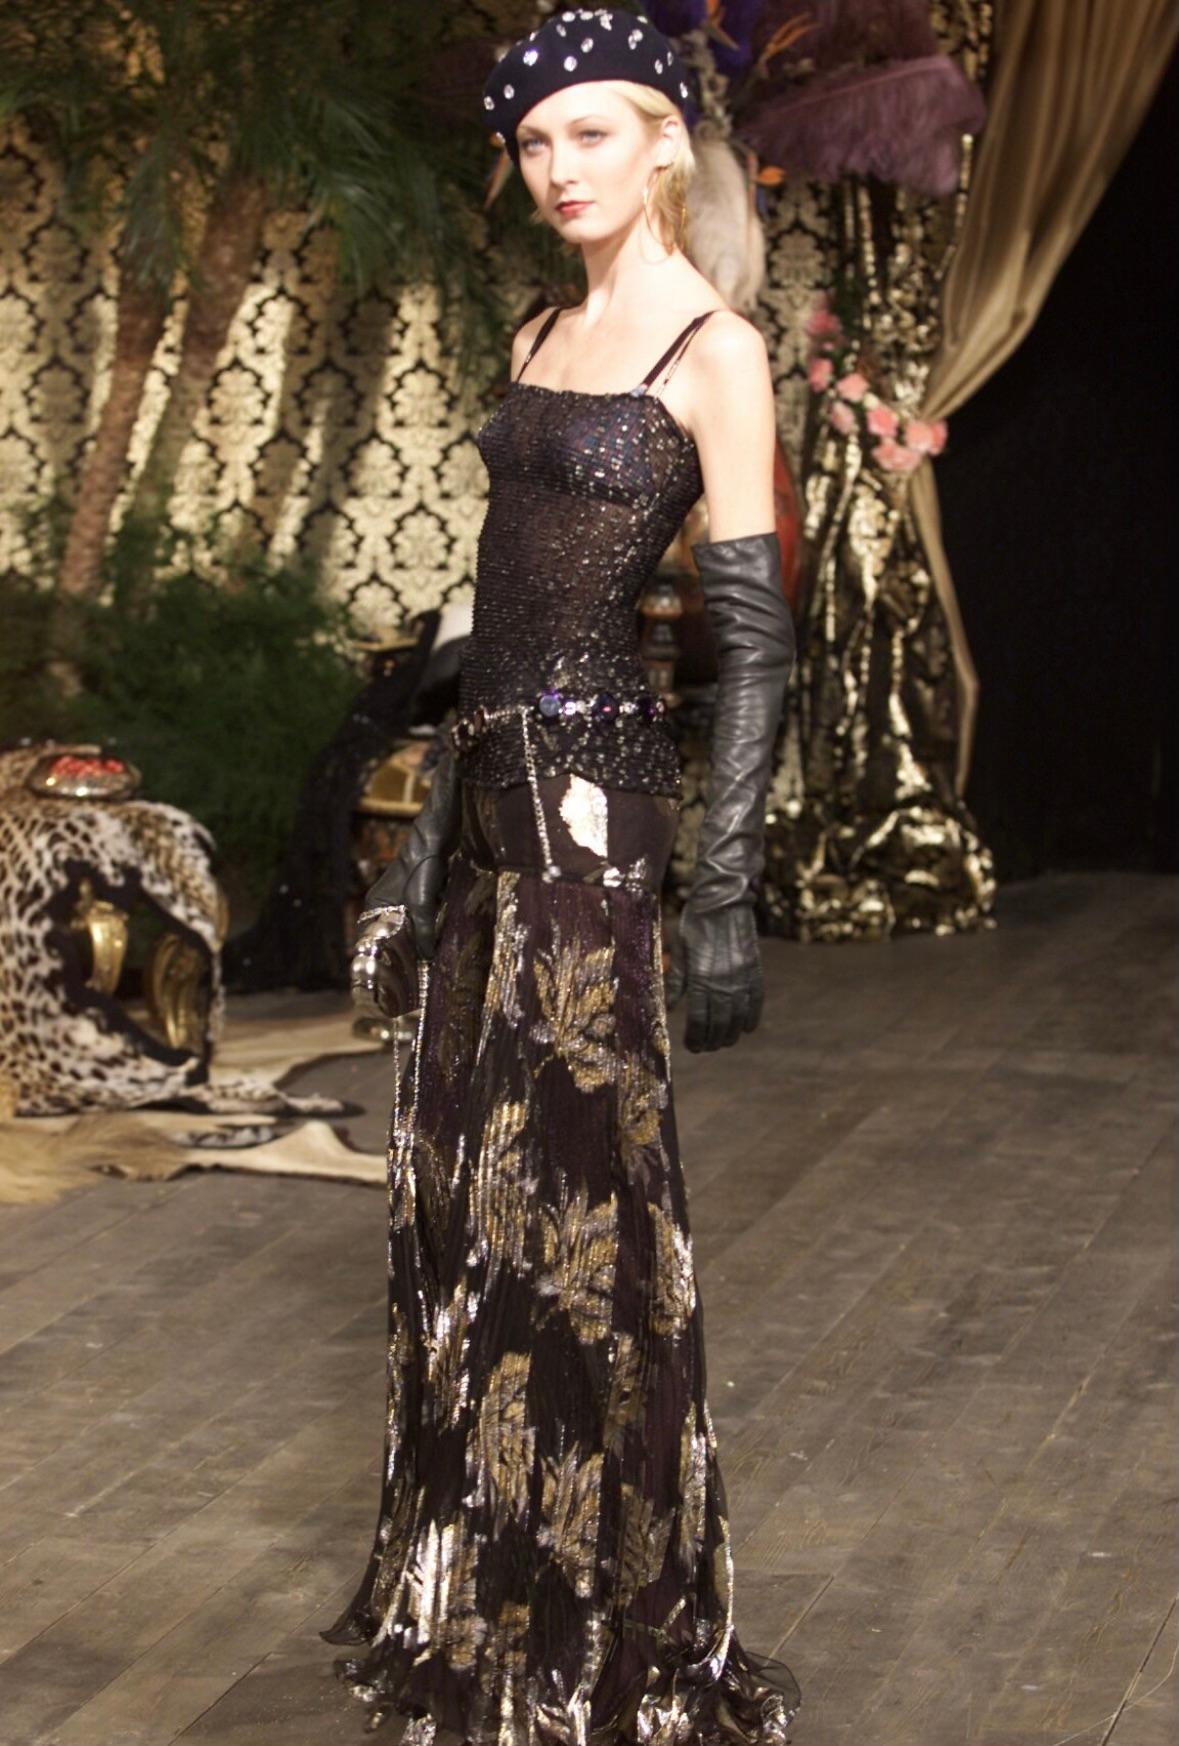 Ich präsentiere eine fabelhafte schwarze Baskenmütze von Dolce und Gabbana mit Kristallbesatz. Diese schicke Baskenmütze aus der Herbst/Winter-Kollektion 2000 wurde erstmals auf dem Laufsteg gezeigt und war auch in der Werbekampagne der Saison zu